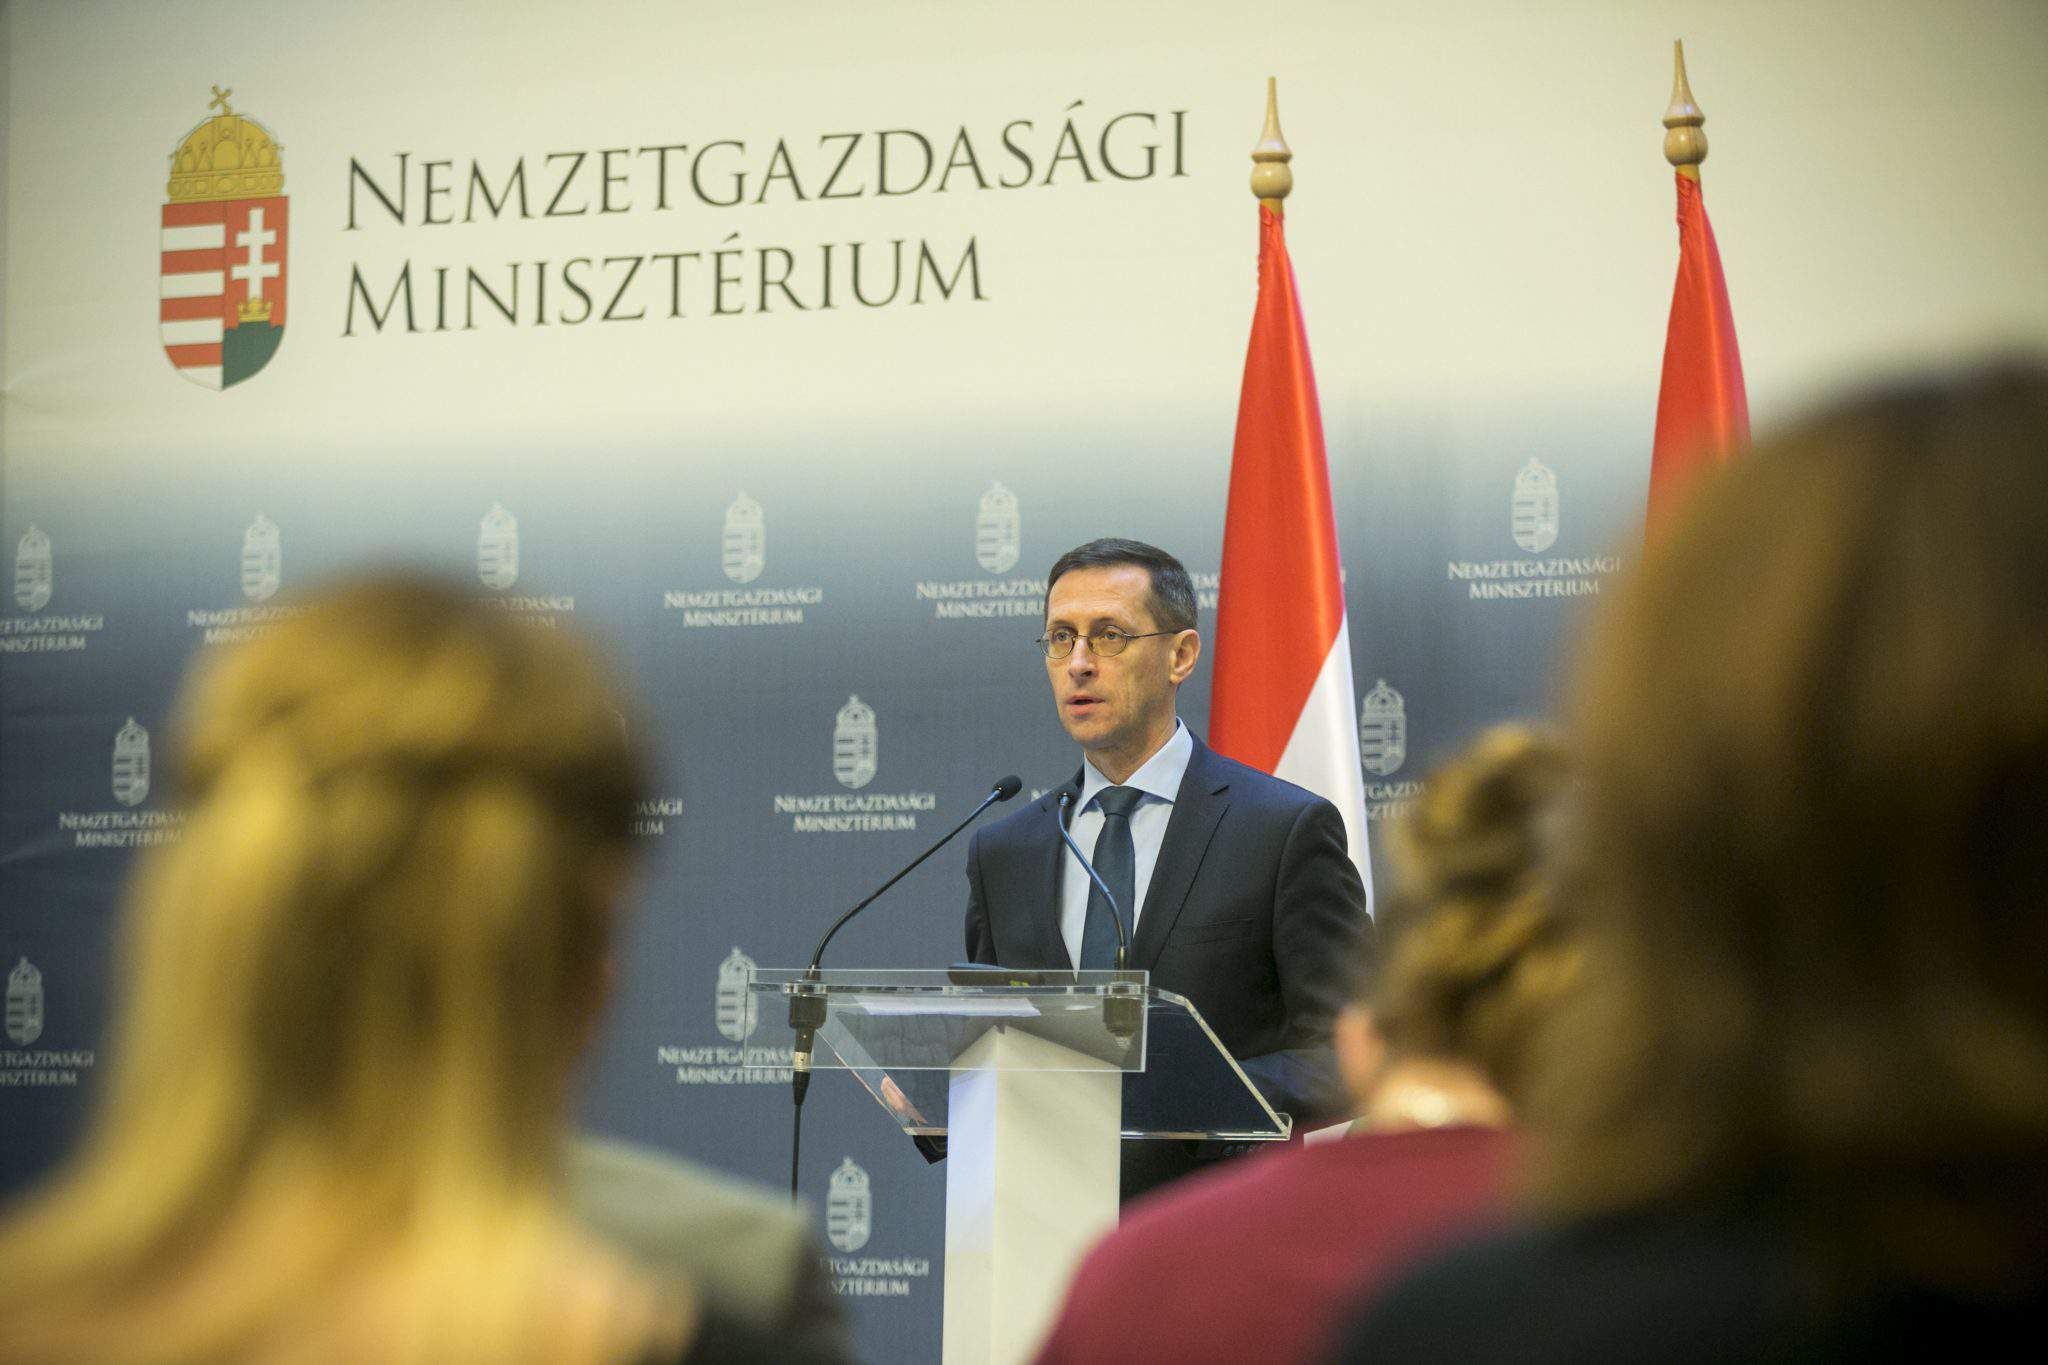 Maďarský ministr hospodářství Varga